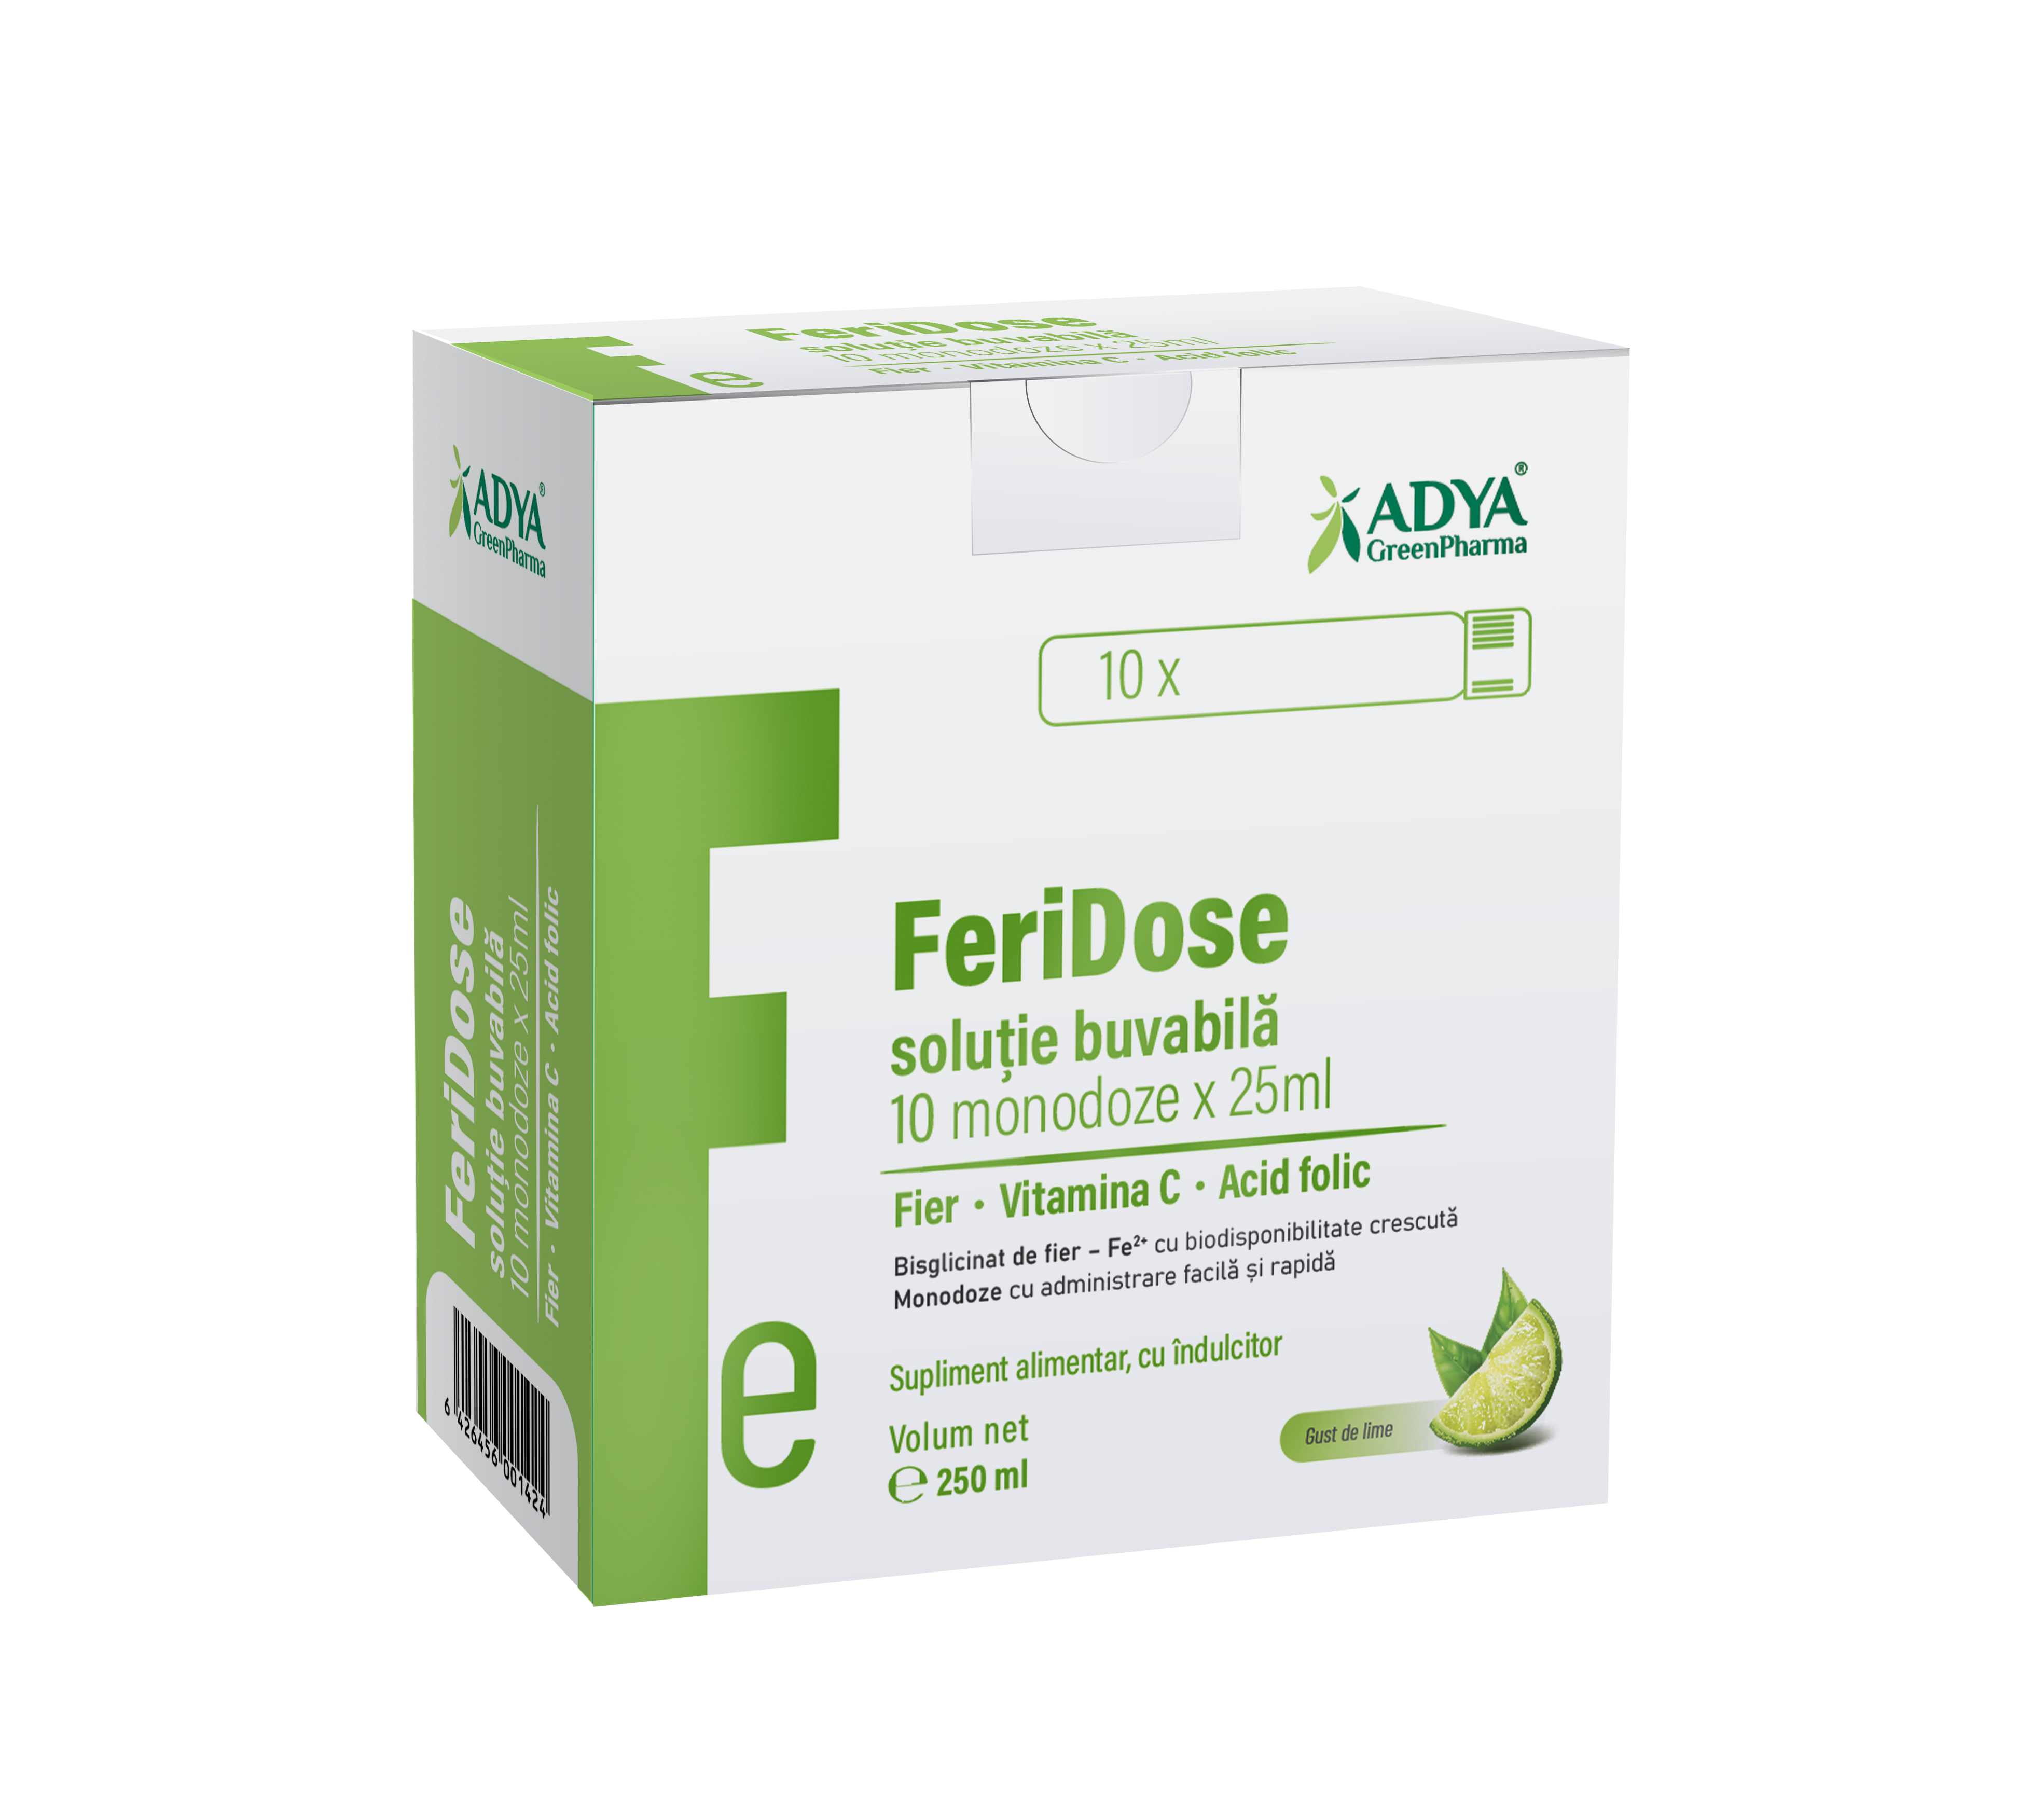 Uz general - FeriDose, soluție buvabilă, 10 monodoze x 25ml, Adya Green Pharma, sinapis.ro